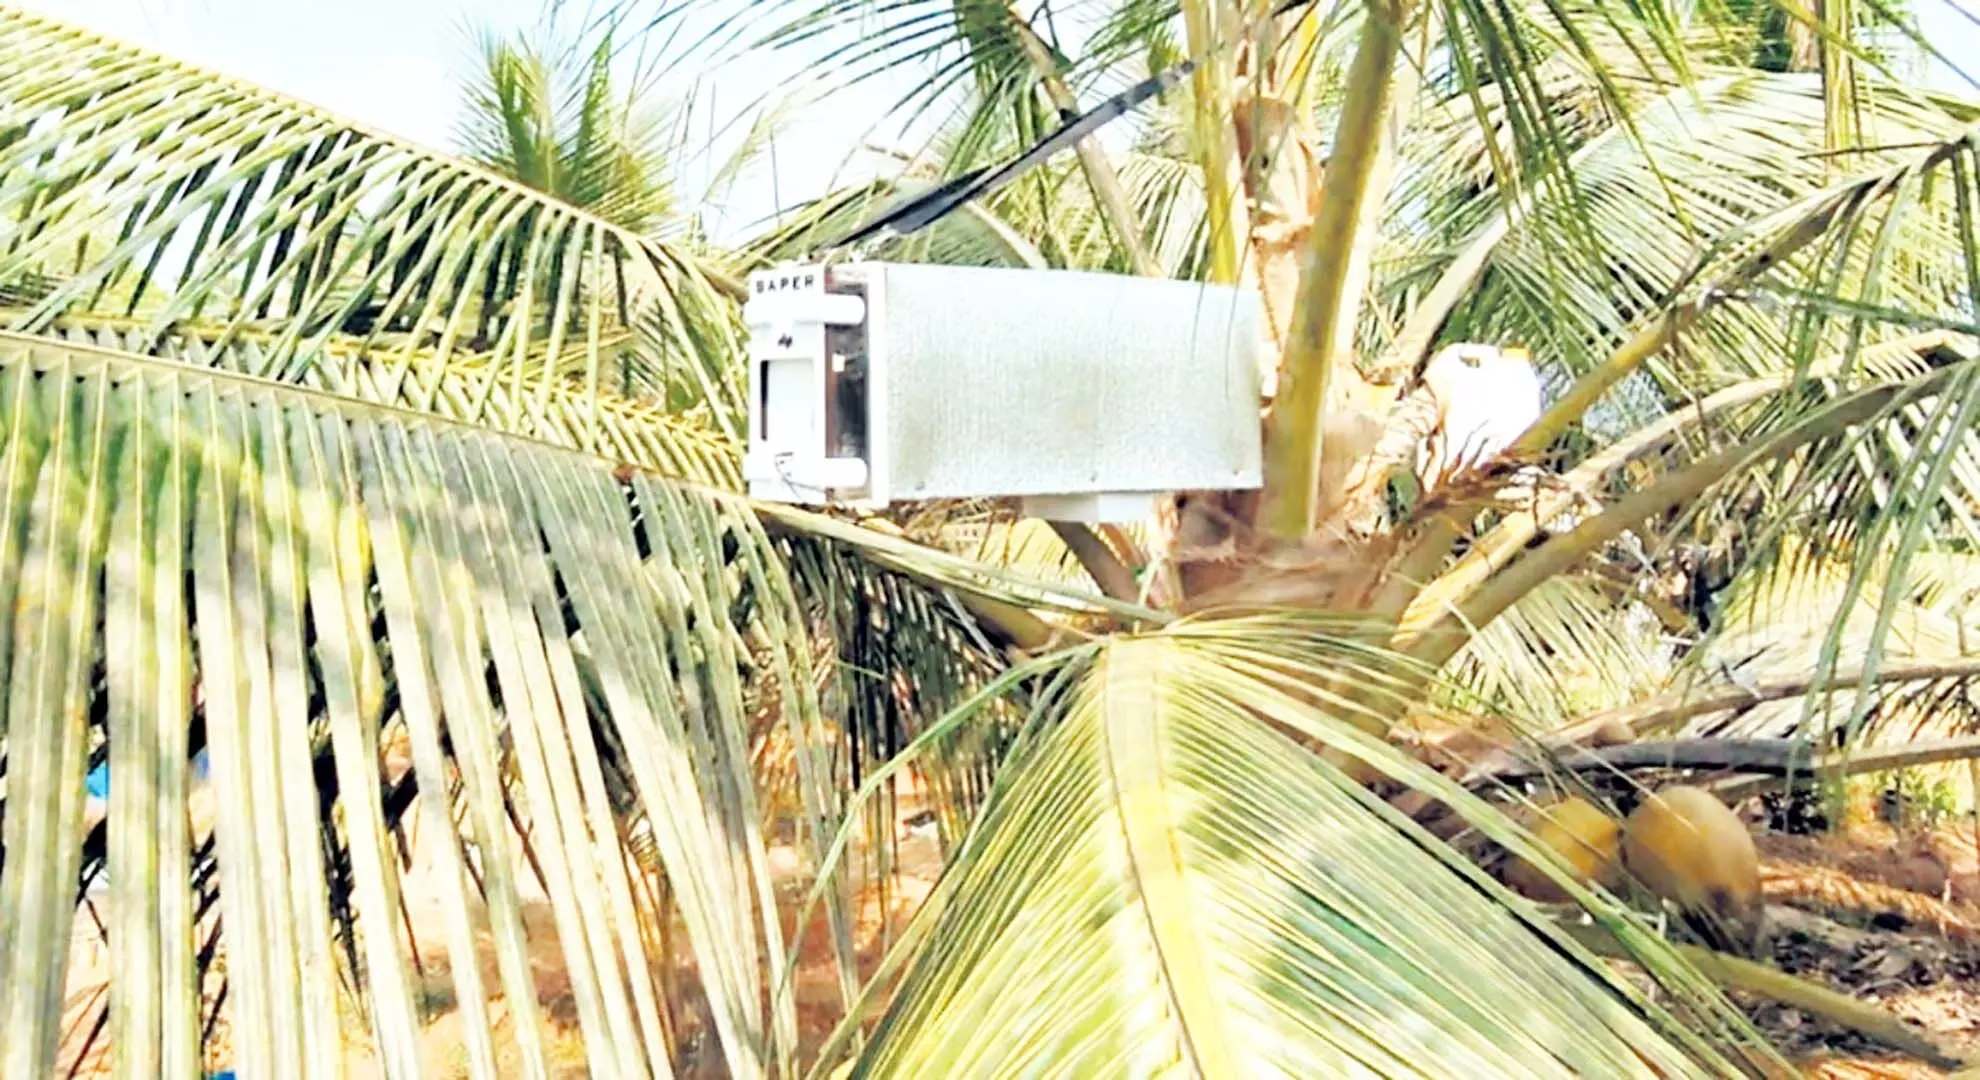 एर्नाकुलम स्थित स्टार्टअप का रोबोटिक टैपर नारियल किसानों को अतिरिक्त लाभ दे रहा है